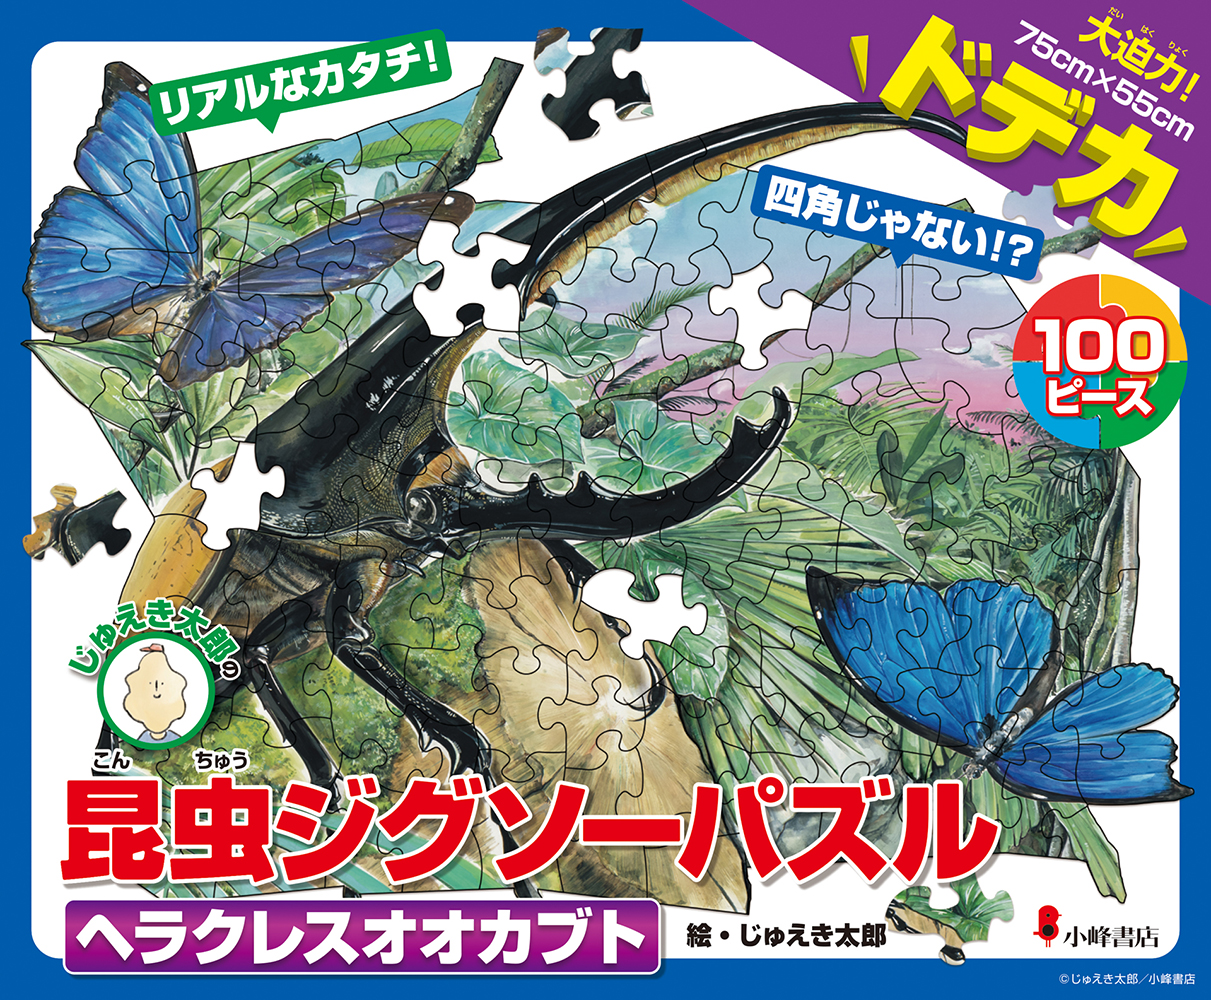 じゅえき太郎さんがイラストを描き下ろした「昆虫ジグソーパズル」発売！